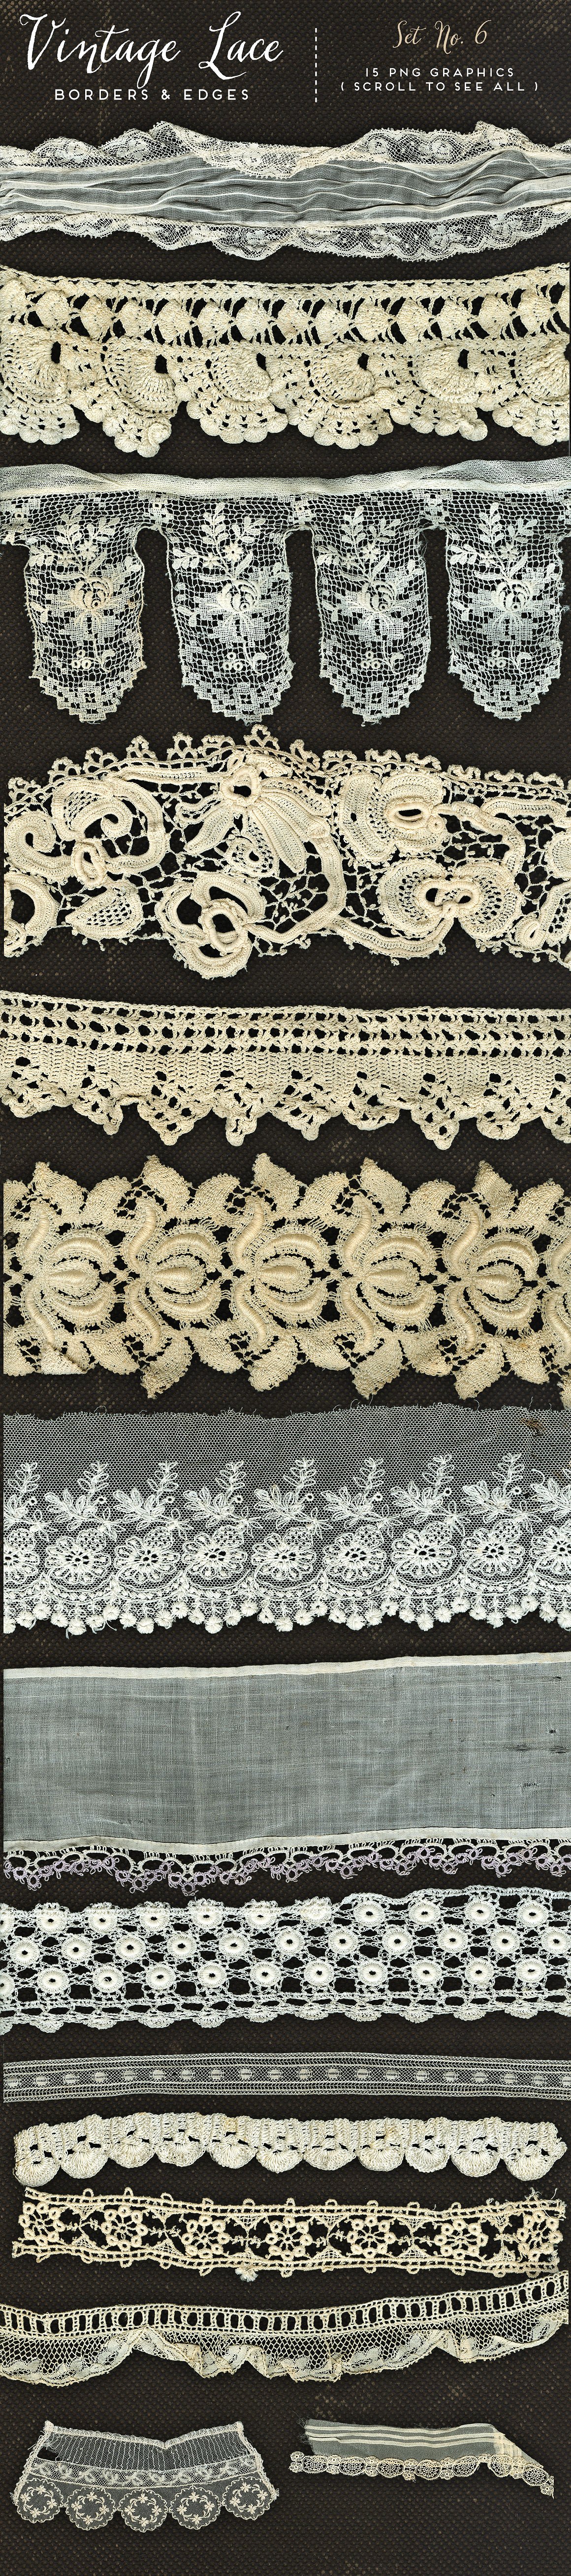 复古蕾丝边框设计素材Vintage Lace Borders